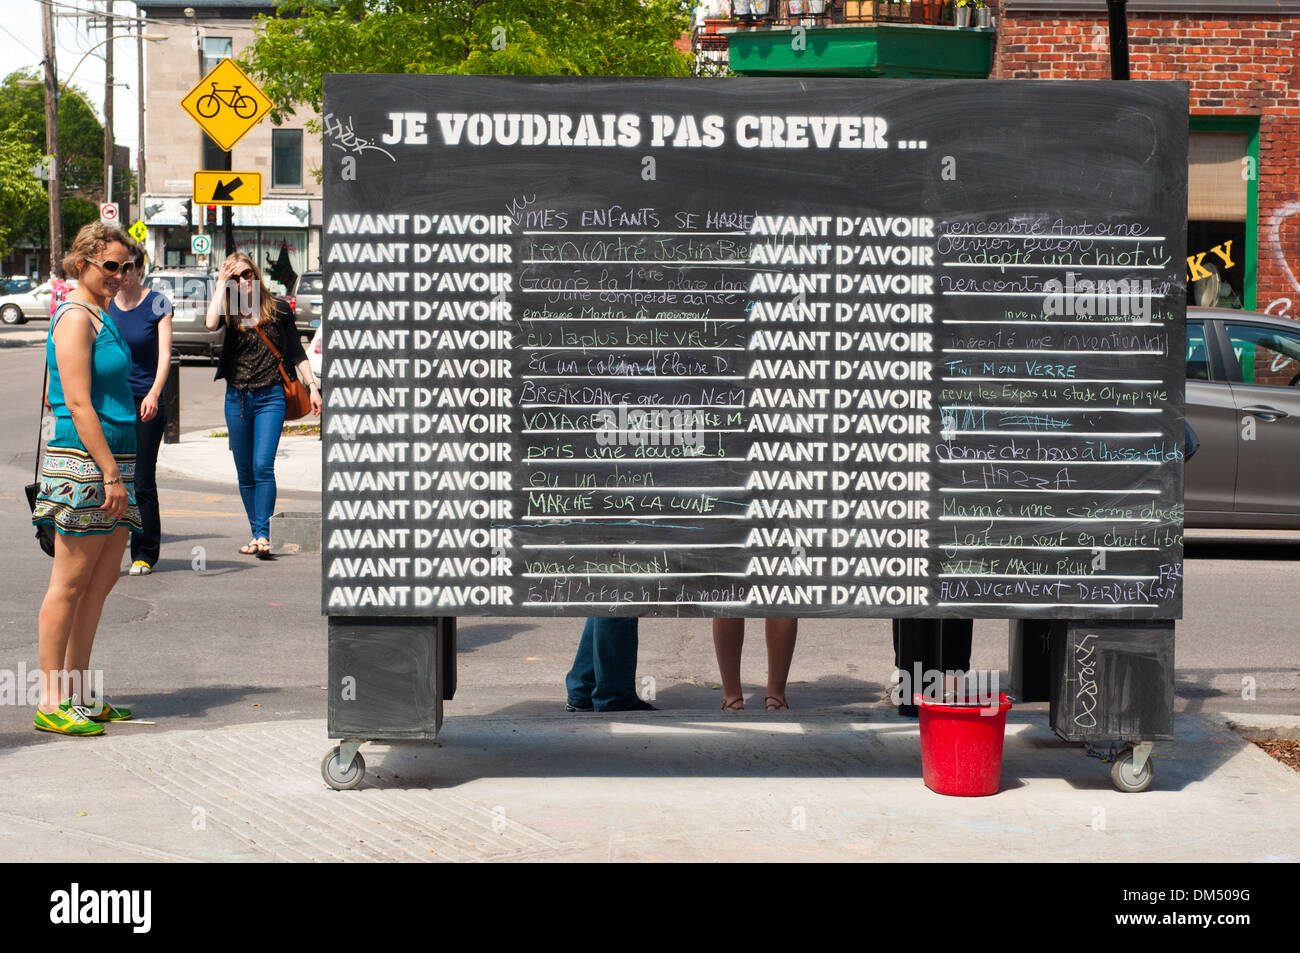 Les montréalais d'écrire sur un tableau noir de la rue ce qu'ils aimeraient faire avant de mourir - une performance de rue dans le quartier Mile End Banque D'Images